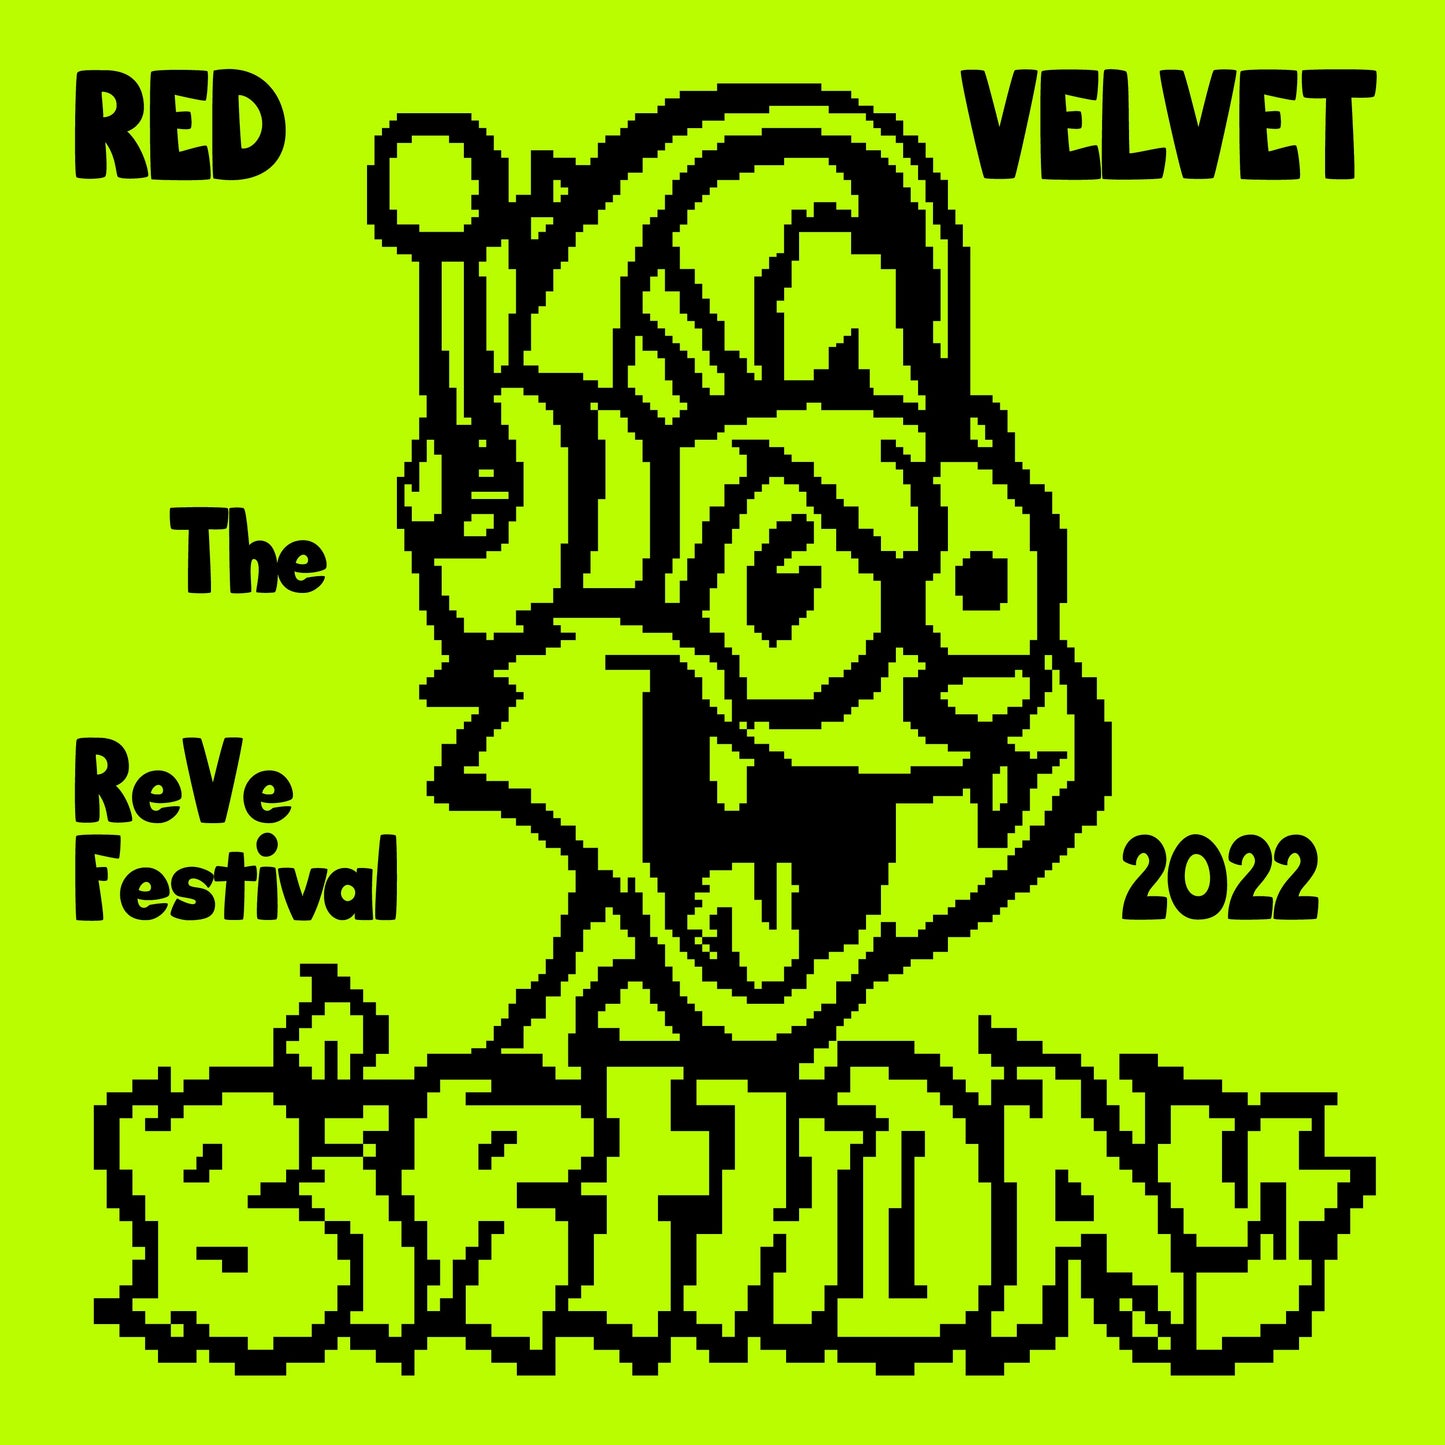 RED VELVET MINI ALBUM 'THE REVE FESTIVAL 2022 BIRTHDAY' (CAKE) COVER